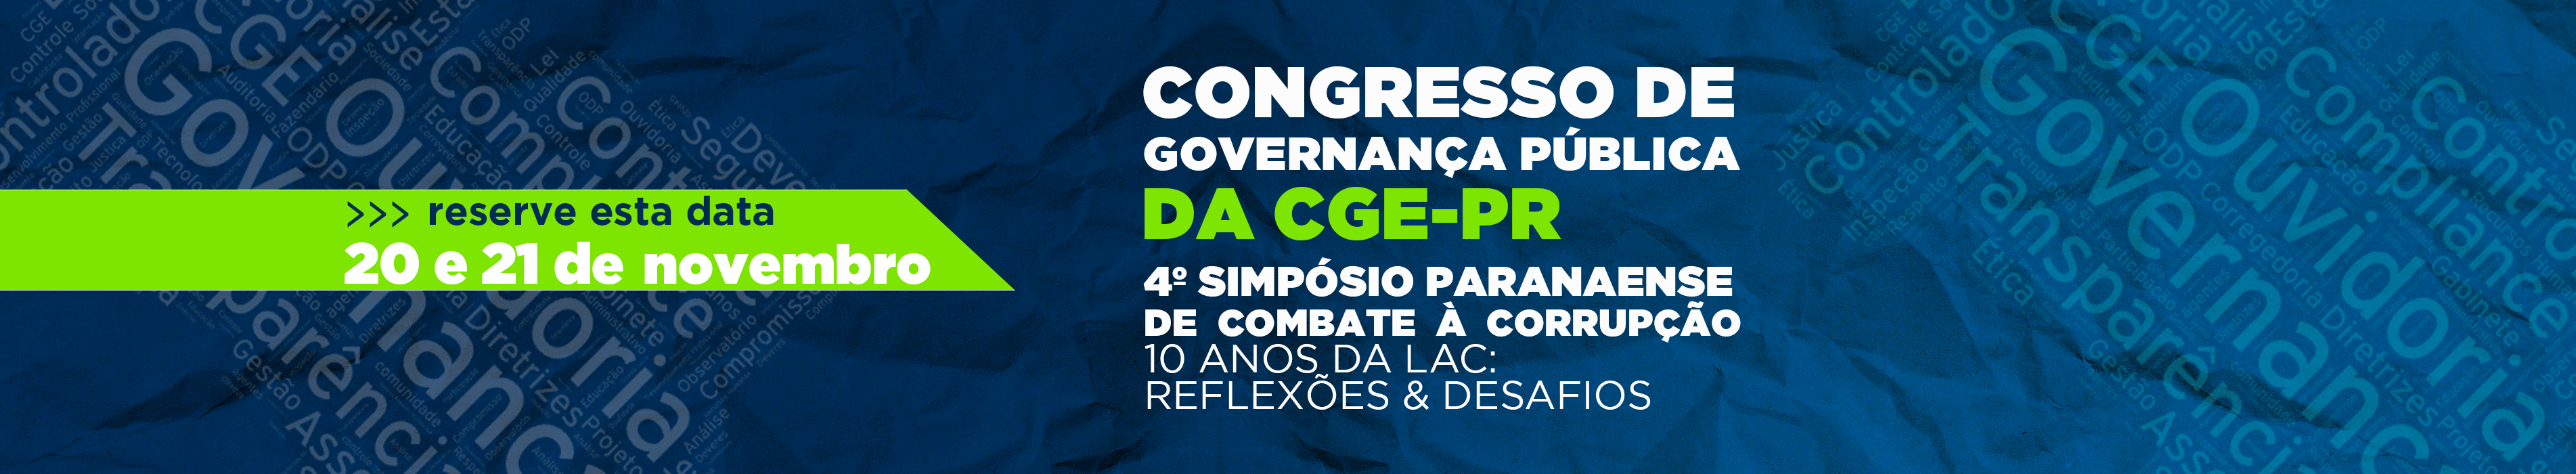 Congresso de Governança Pública da CGE-PR